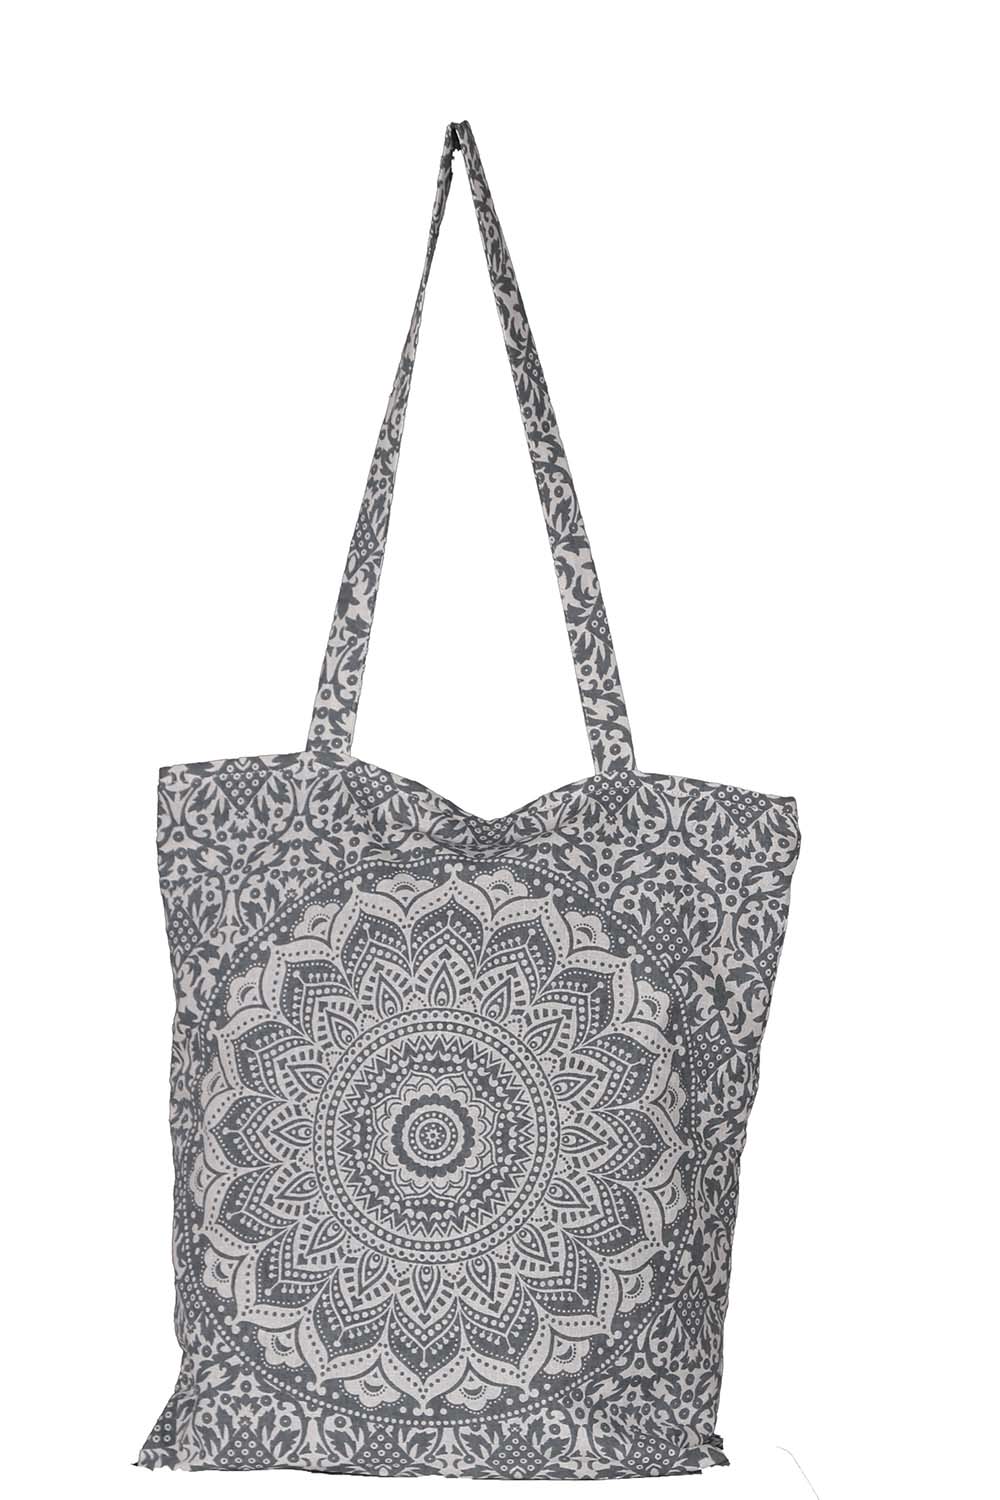 Mandala Zip Top Tote Bag Grey/White 